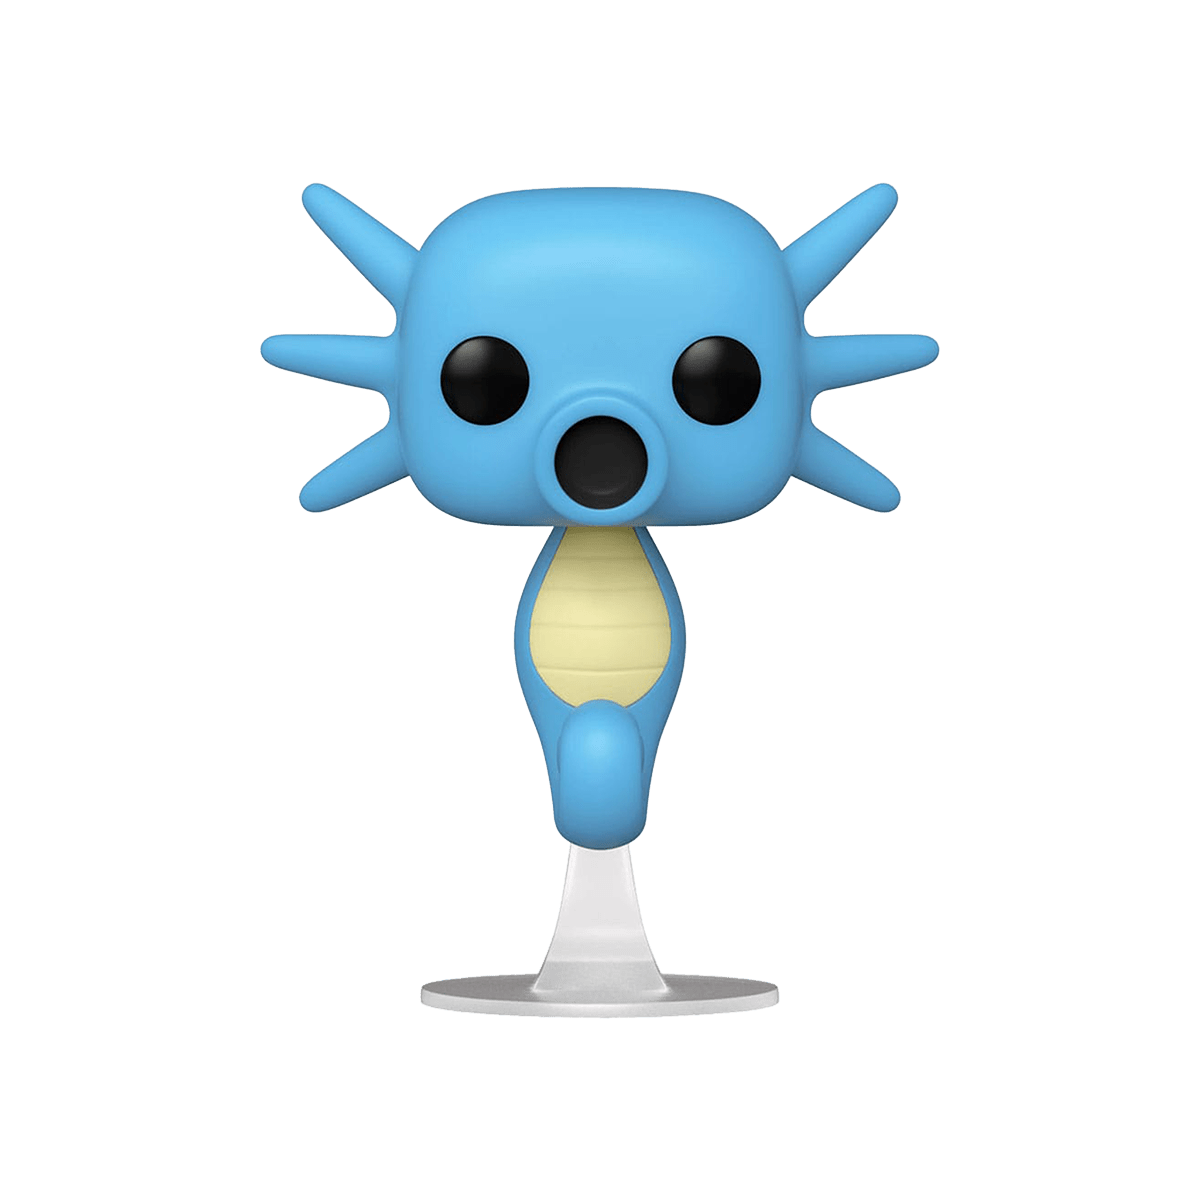 Funko POP! Seeper #844 - Pokémon - Cardmaniac.ch